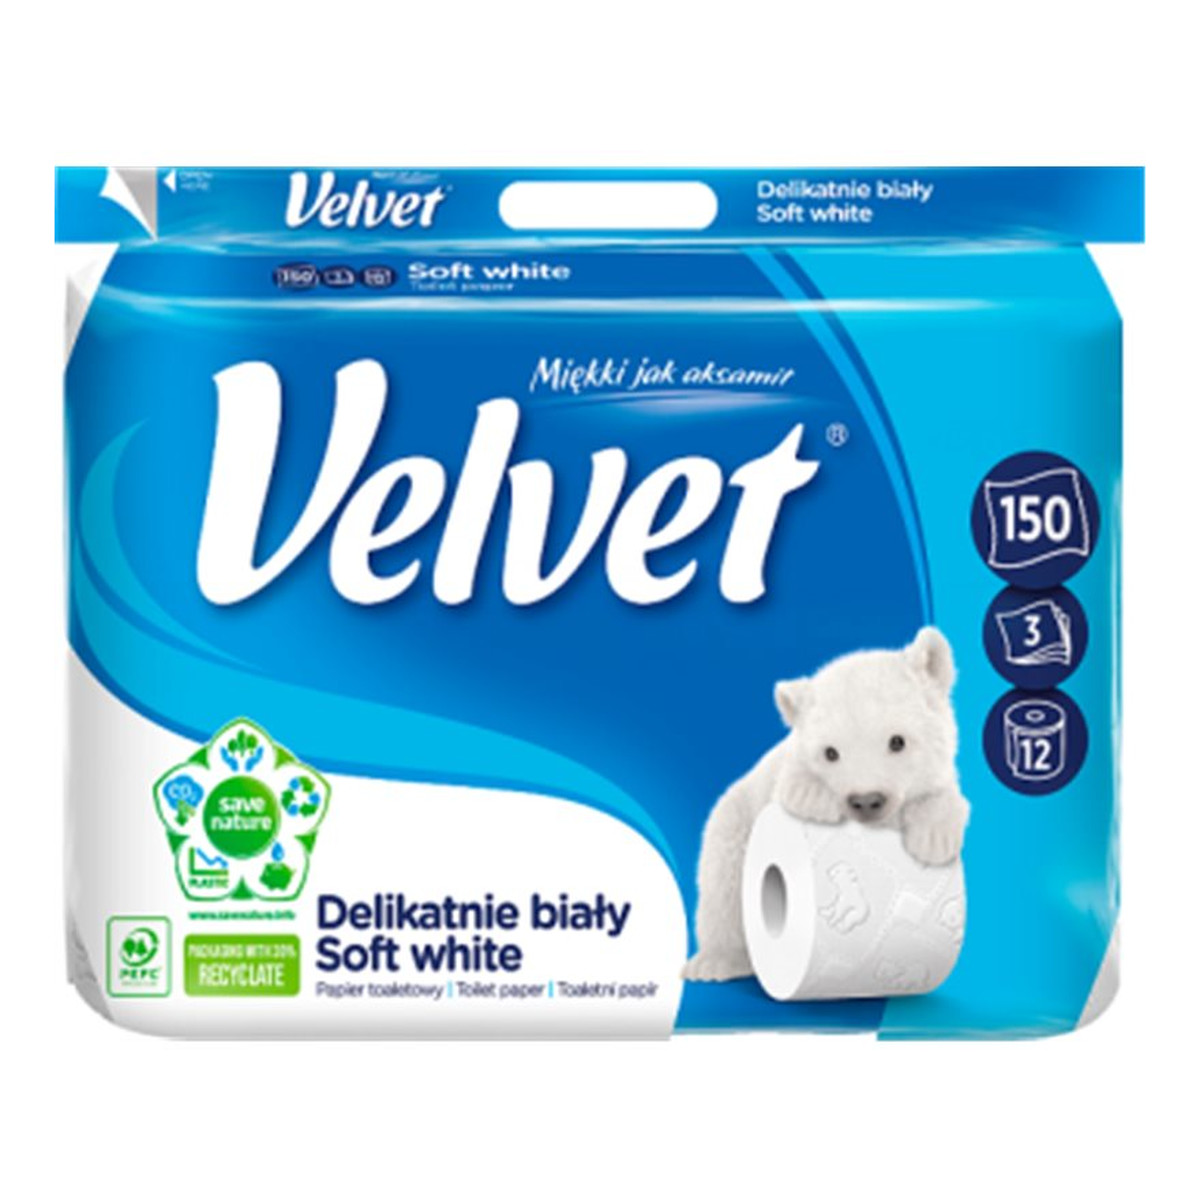 Velvet Delikatnie biały papier toaletowy 12rolek